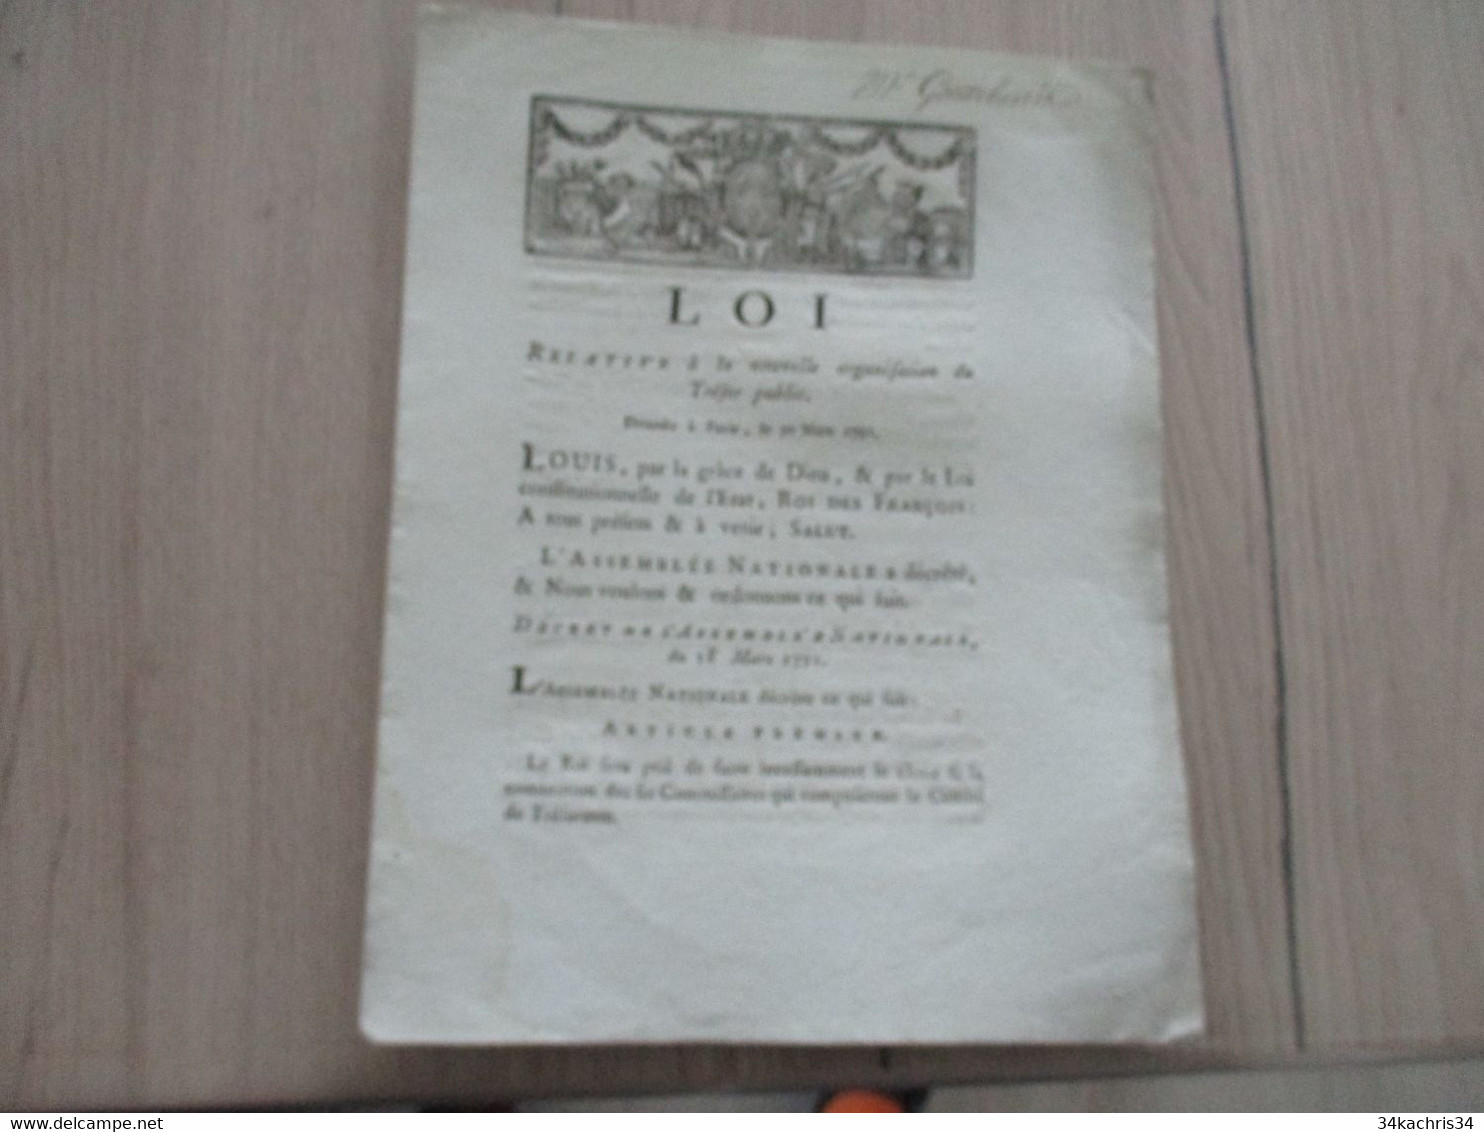 Révolution Loi 30 Mars 1791  Relative à La Nouvelle Organisation Du Trésor Public - Wetten & Decreten